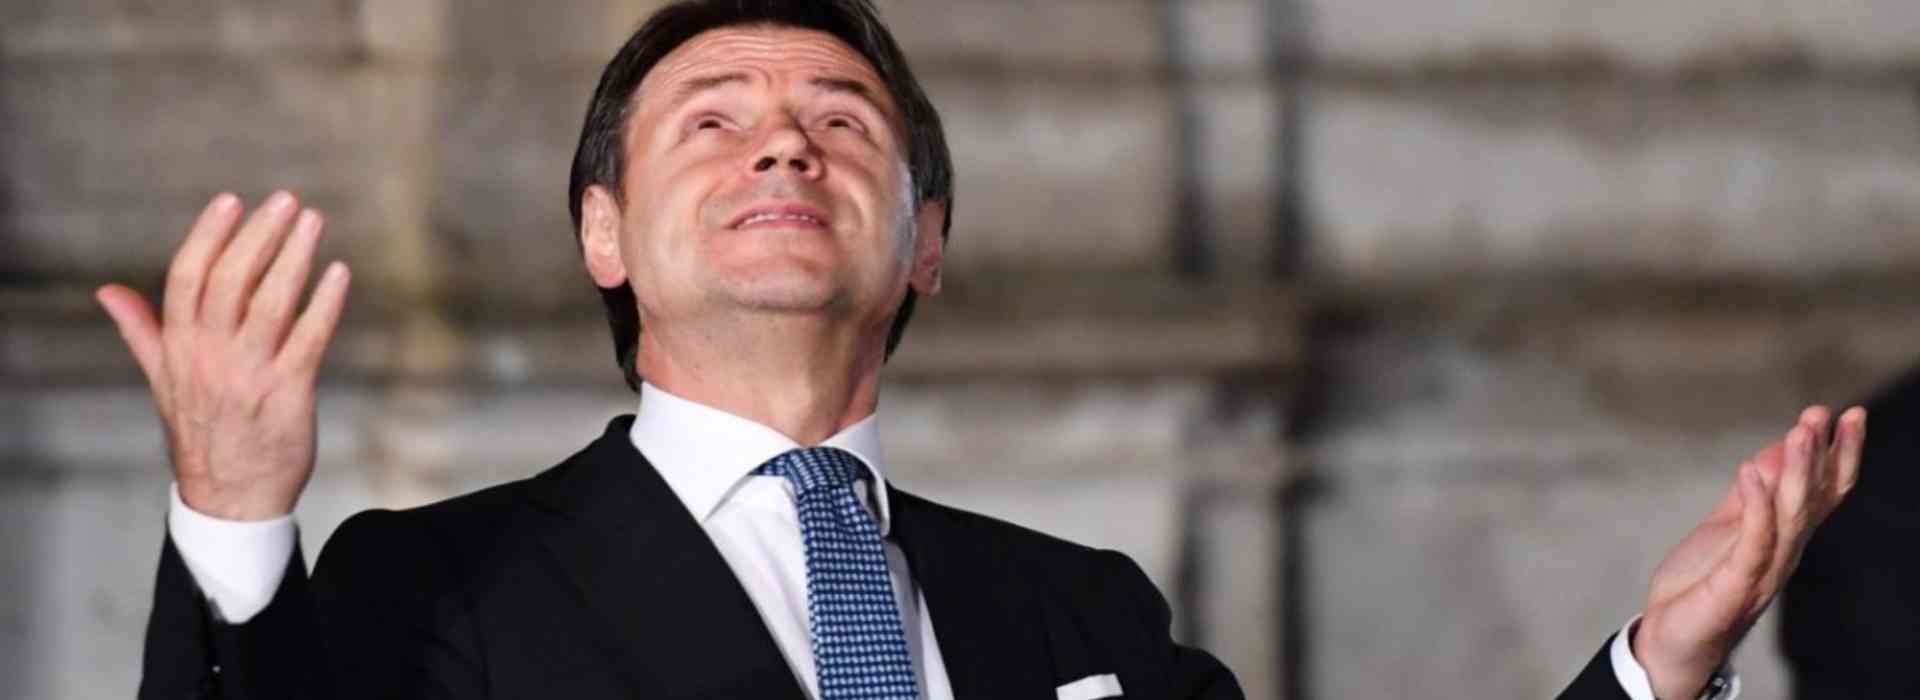 Crisi di governo: Renzi ritira i ministri.